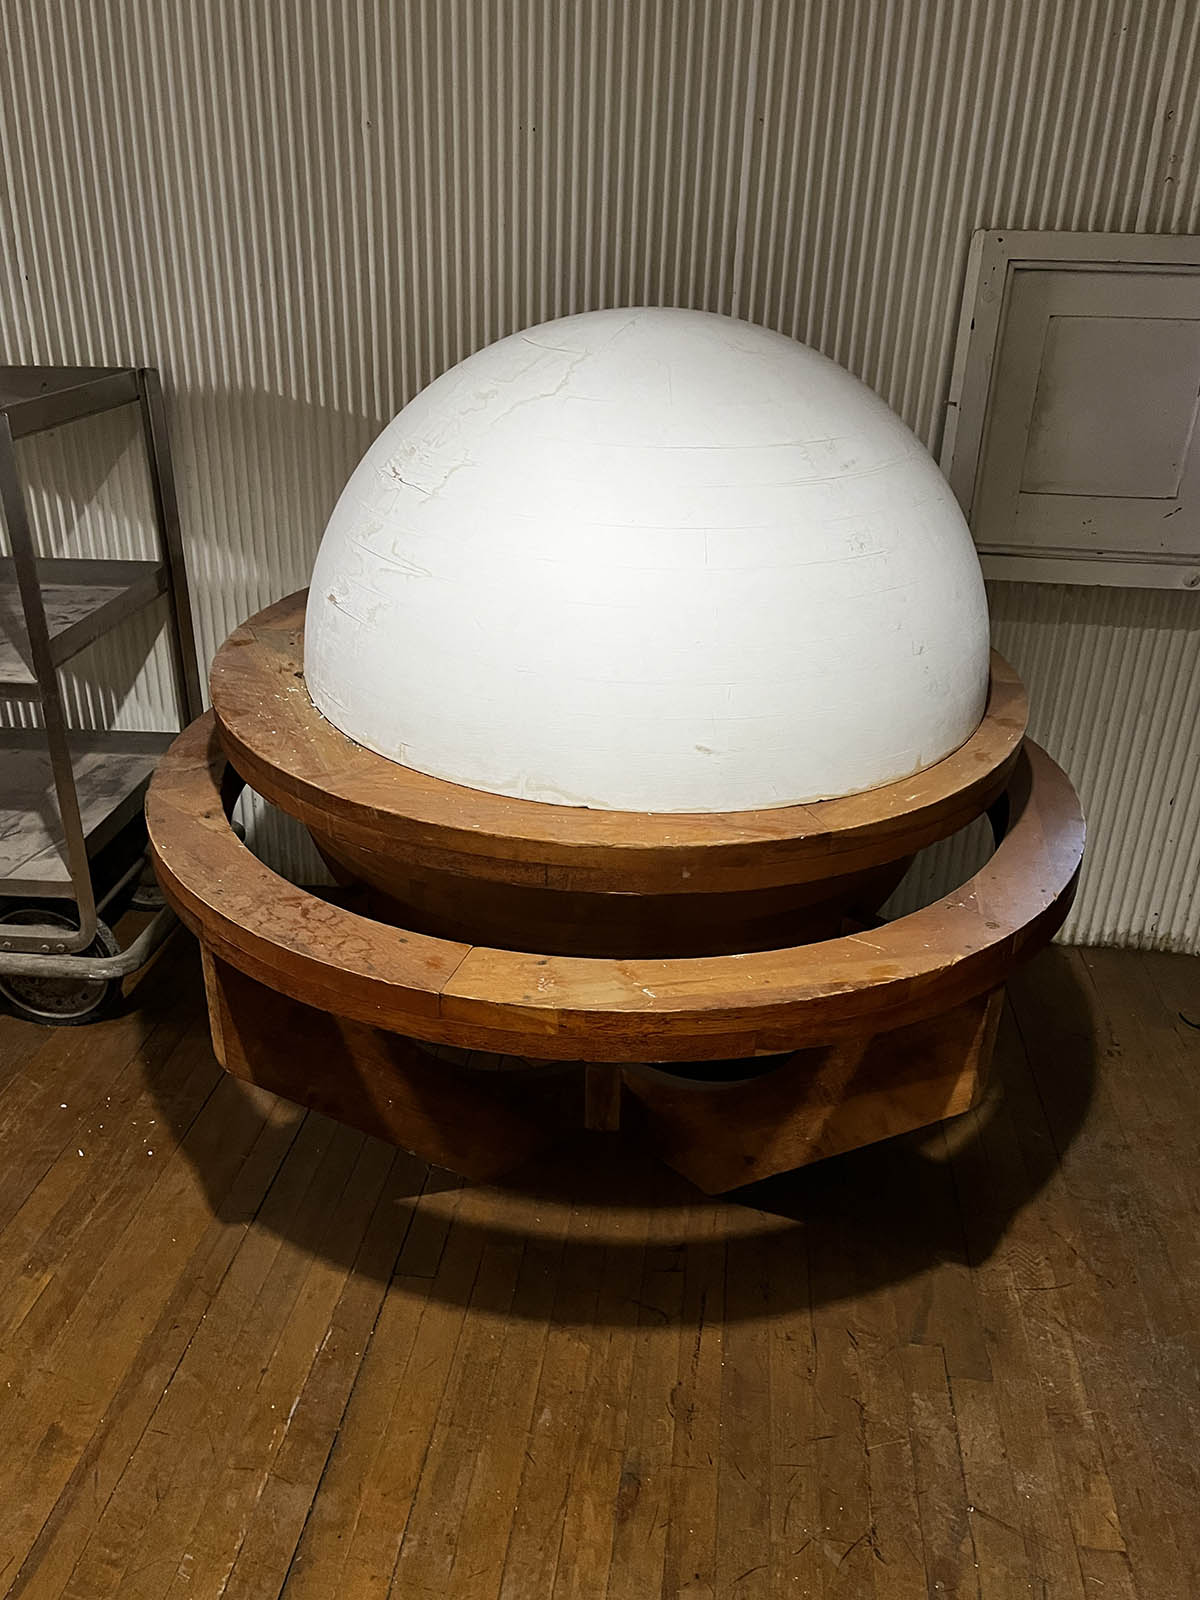 sphere